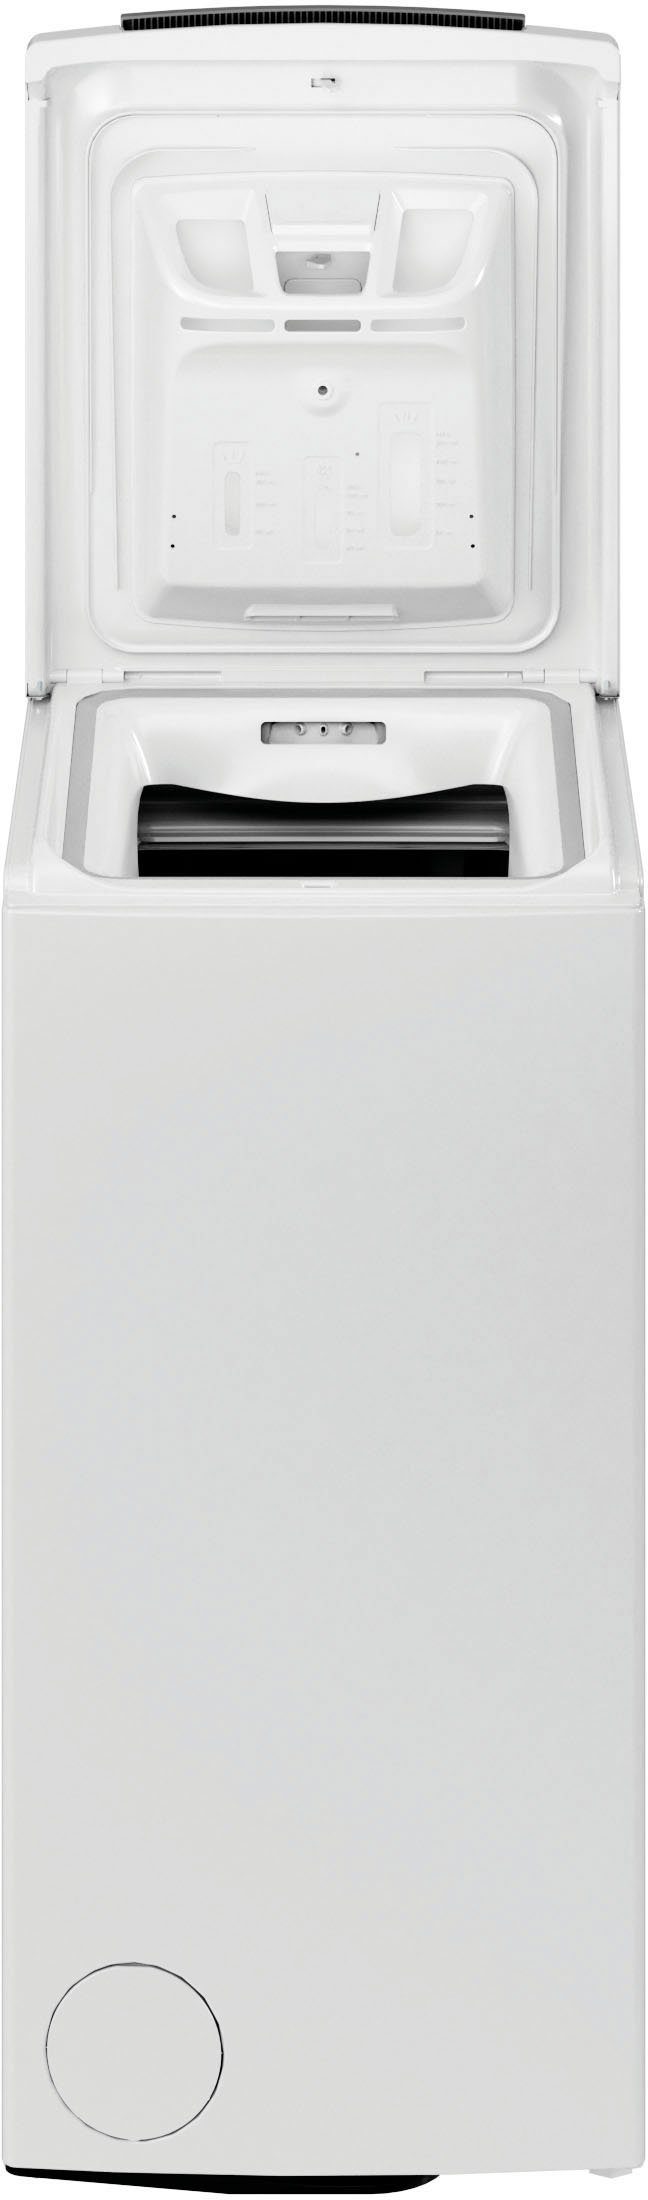 BAUKNECHT Waschmaschine Toplader WMT U/min 6ZB, Eco 6 1200 Pro kg